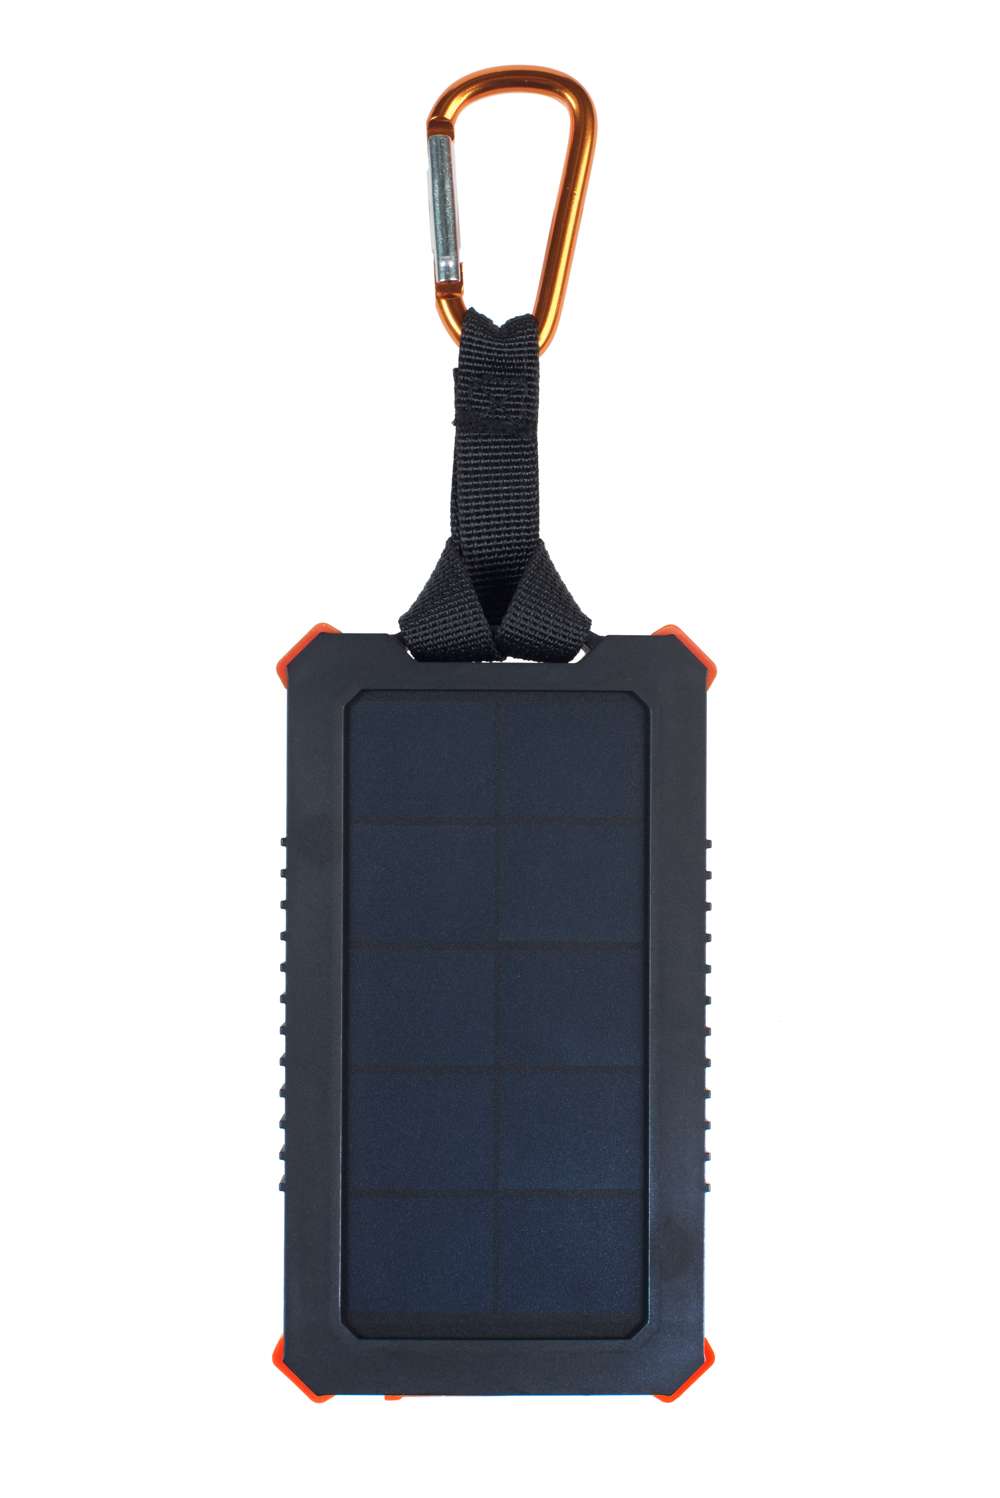 AM122 - Xtreme Solar Ladegerät Powerbank Impulse - 5000 mAh - Schwarz